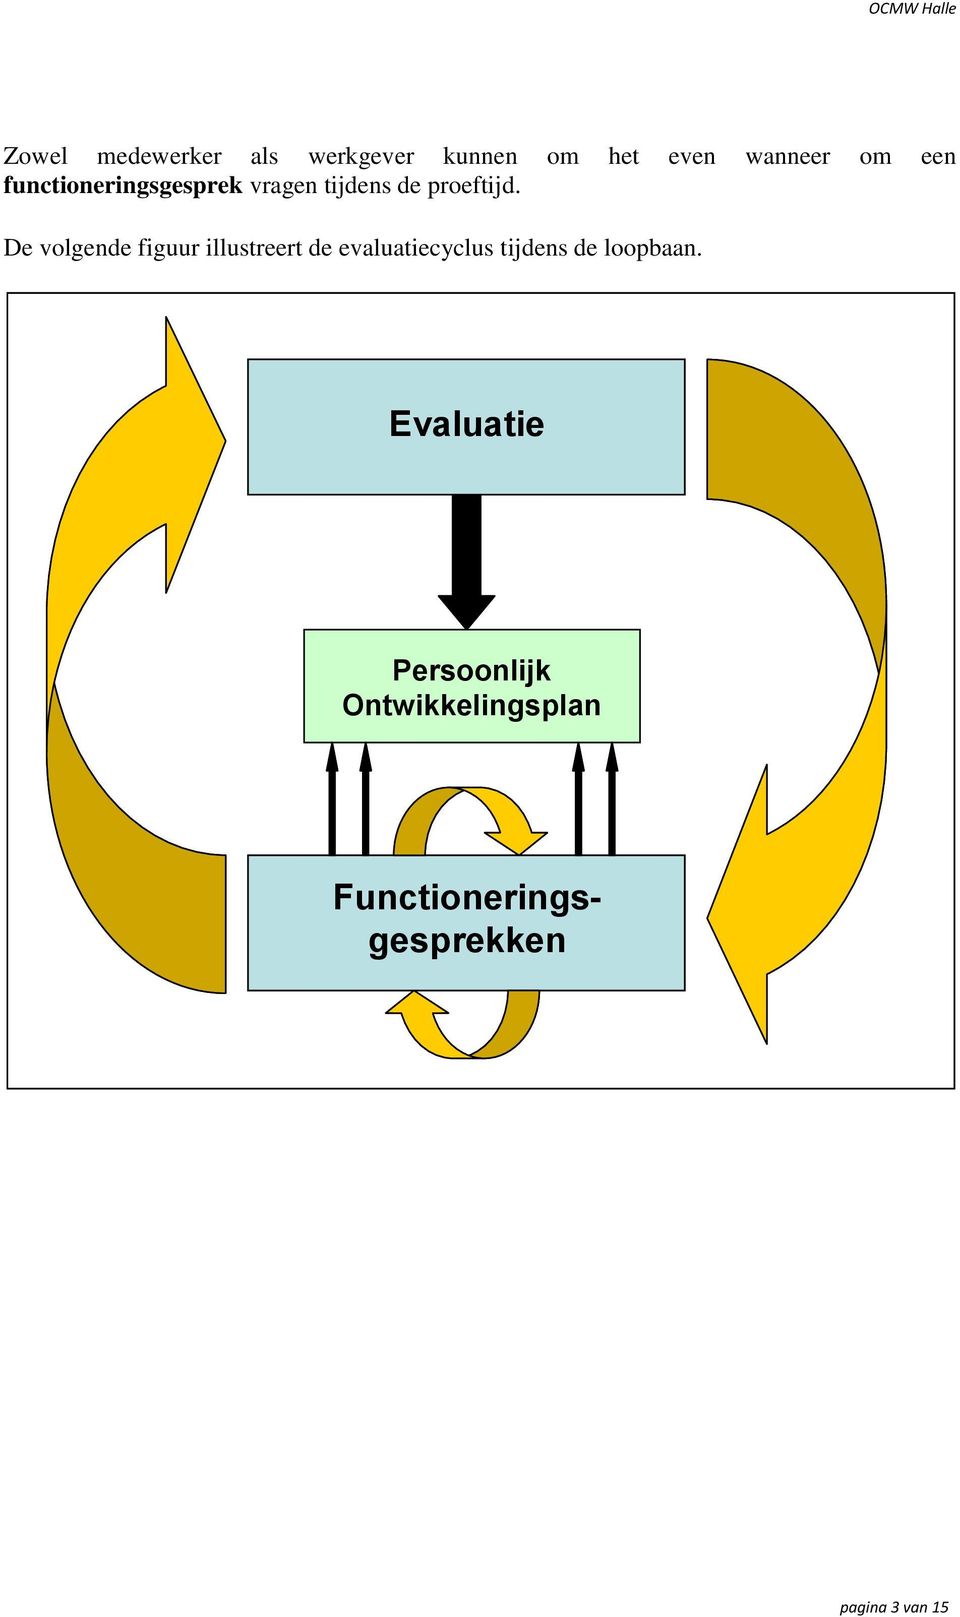 De volgende figuur illustreert de evaluatiecyclus tijdens de loopbaan.